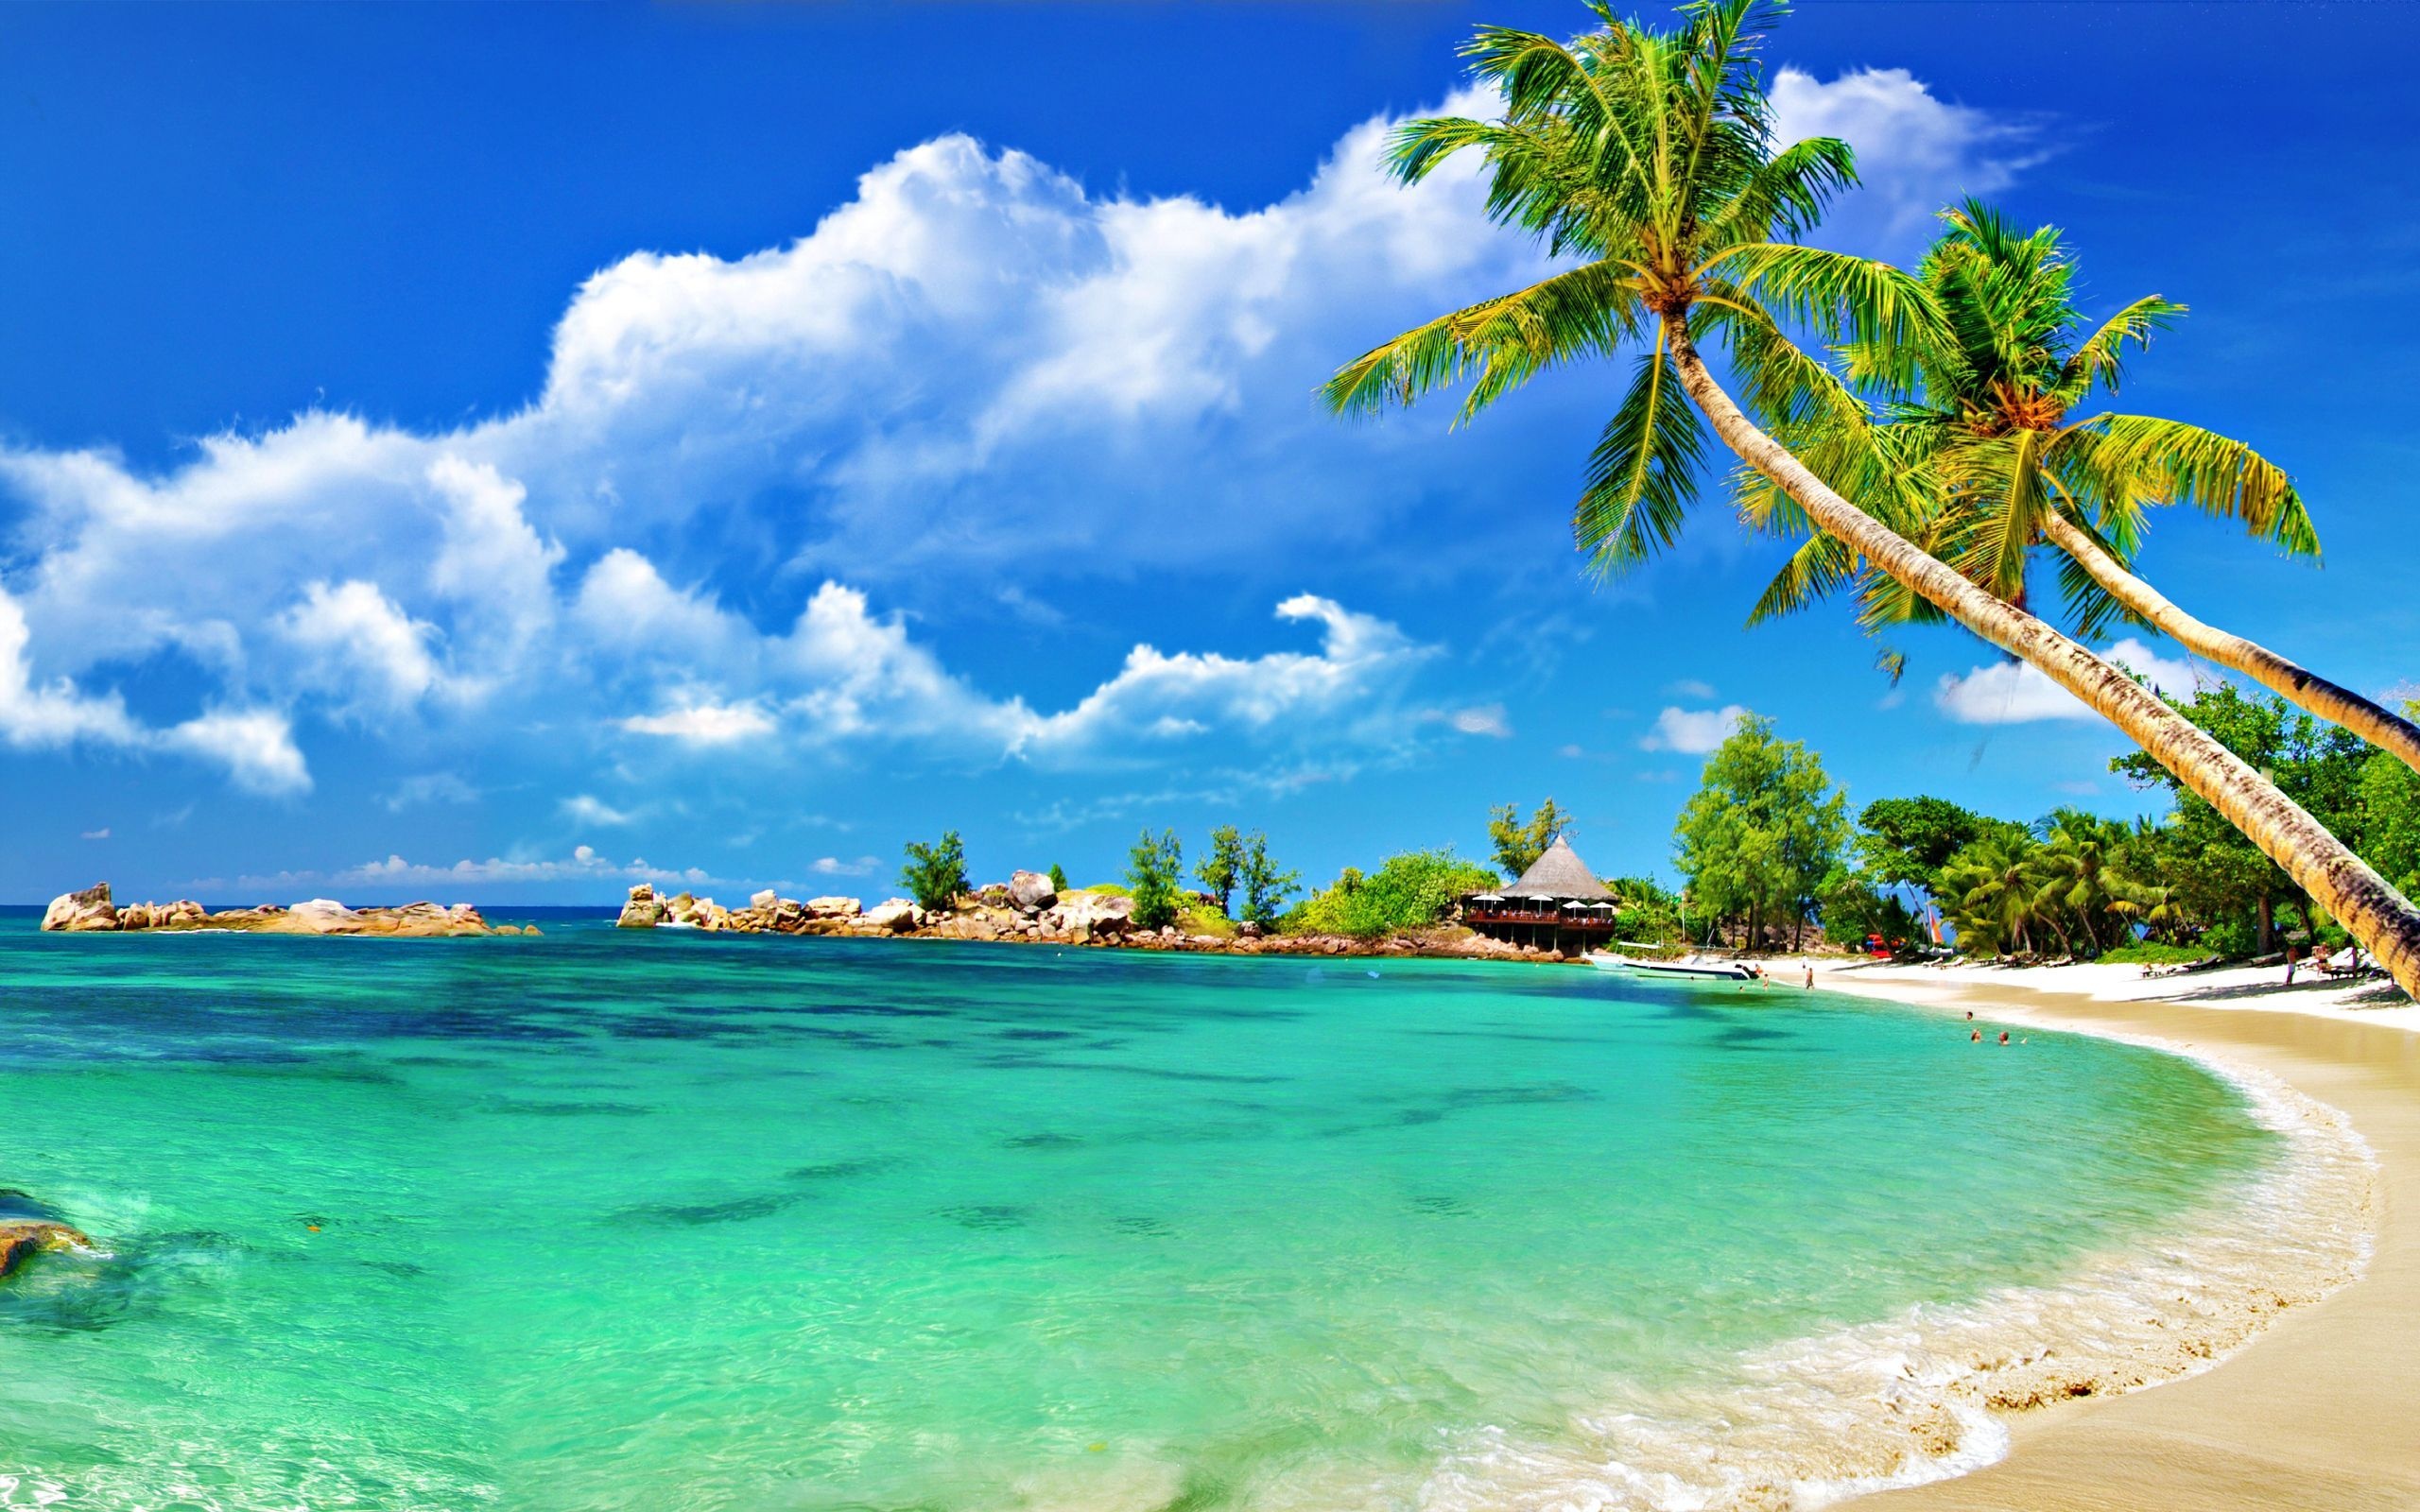 Caribbean Islands: The Republic of Cuba, Isla de la Juventud, Oceanic landforms. 2560x1600 HD Wallpaper.